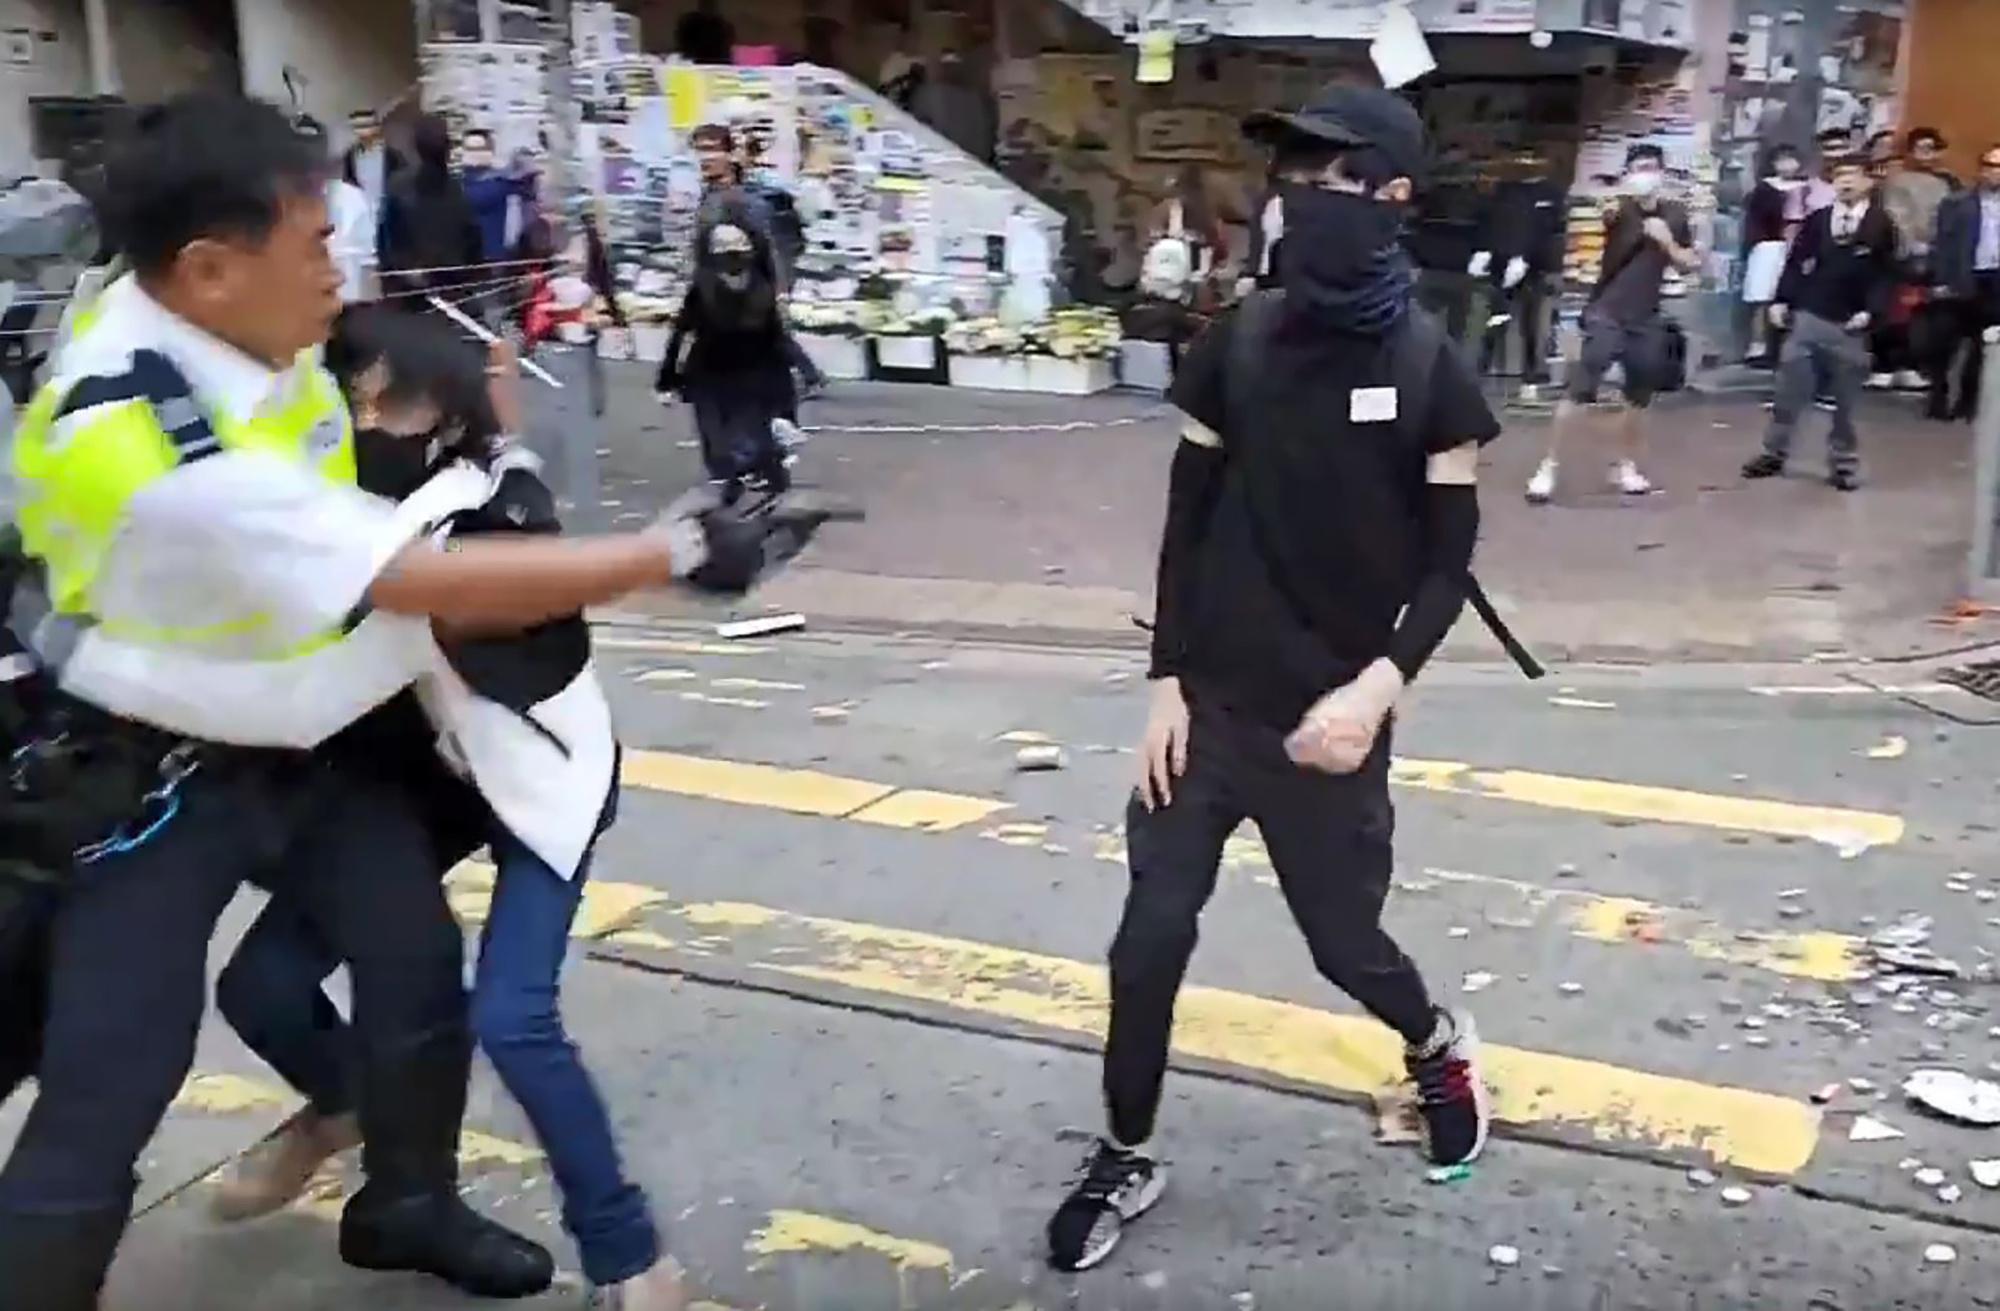 Politieman schiet actievoerder in de borst tijdens pro-democratieprotesten in het Sai Wan Ho district in Hongkong.